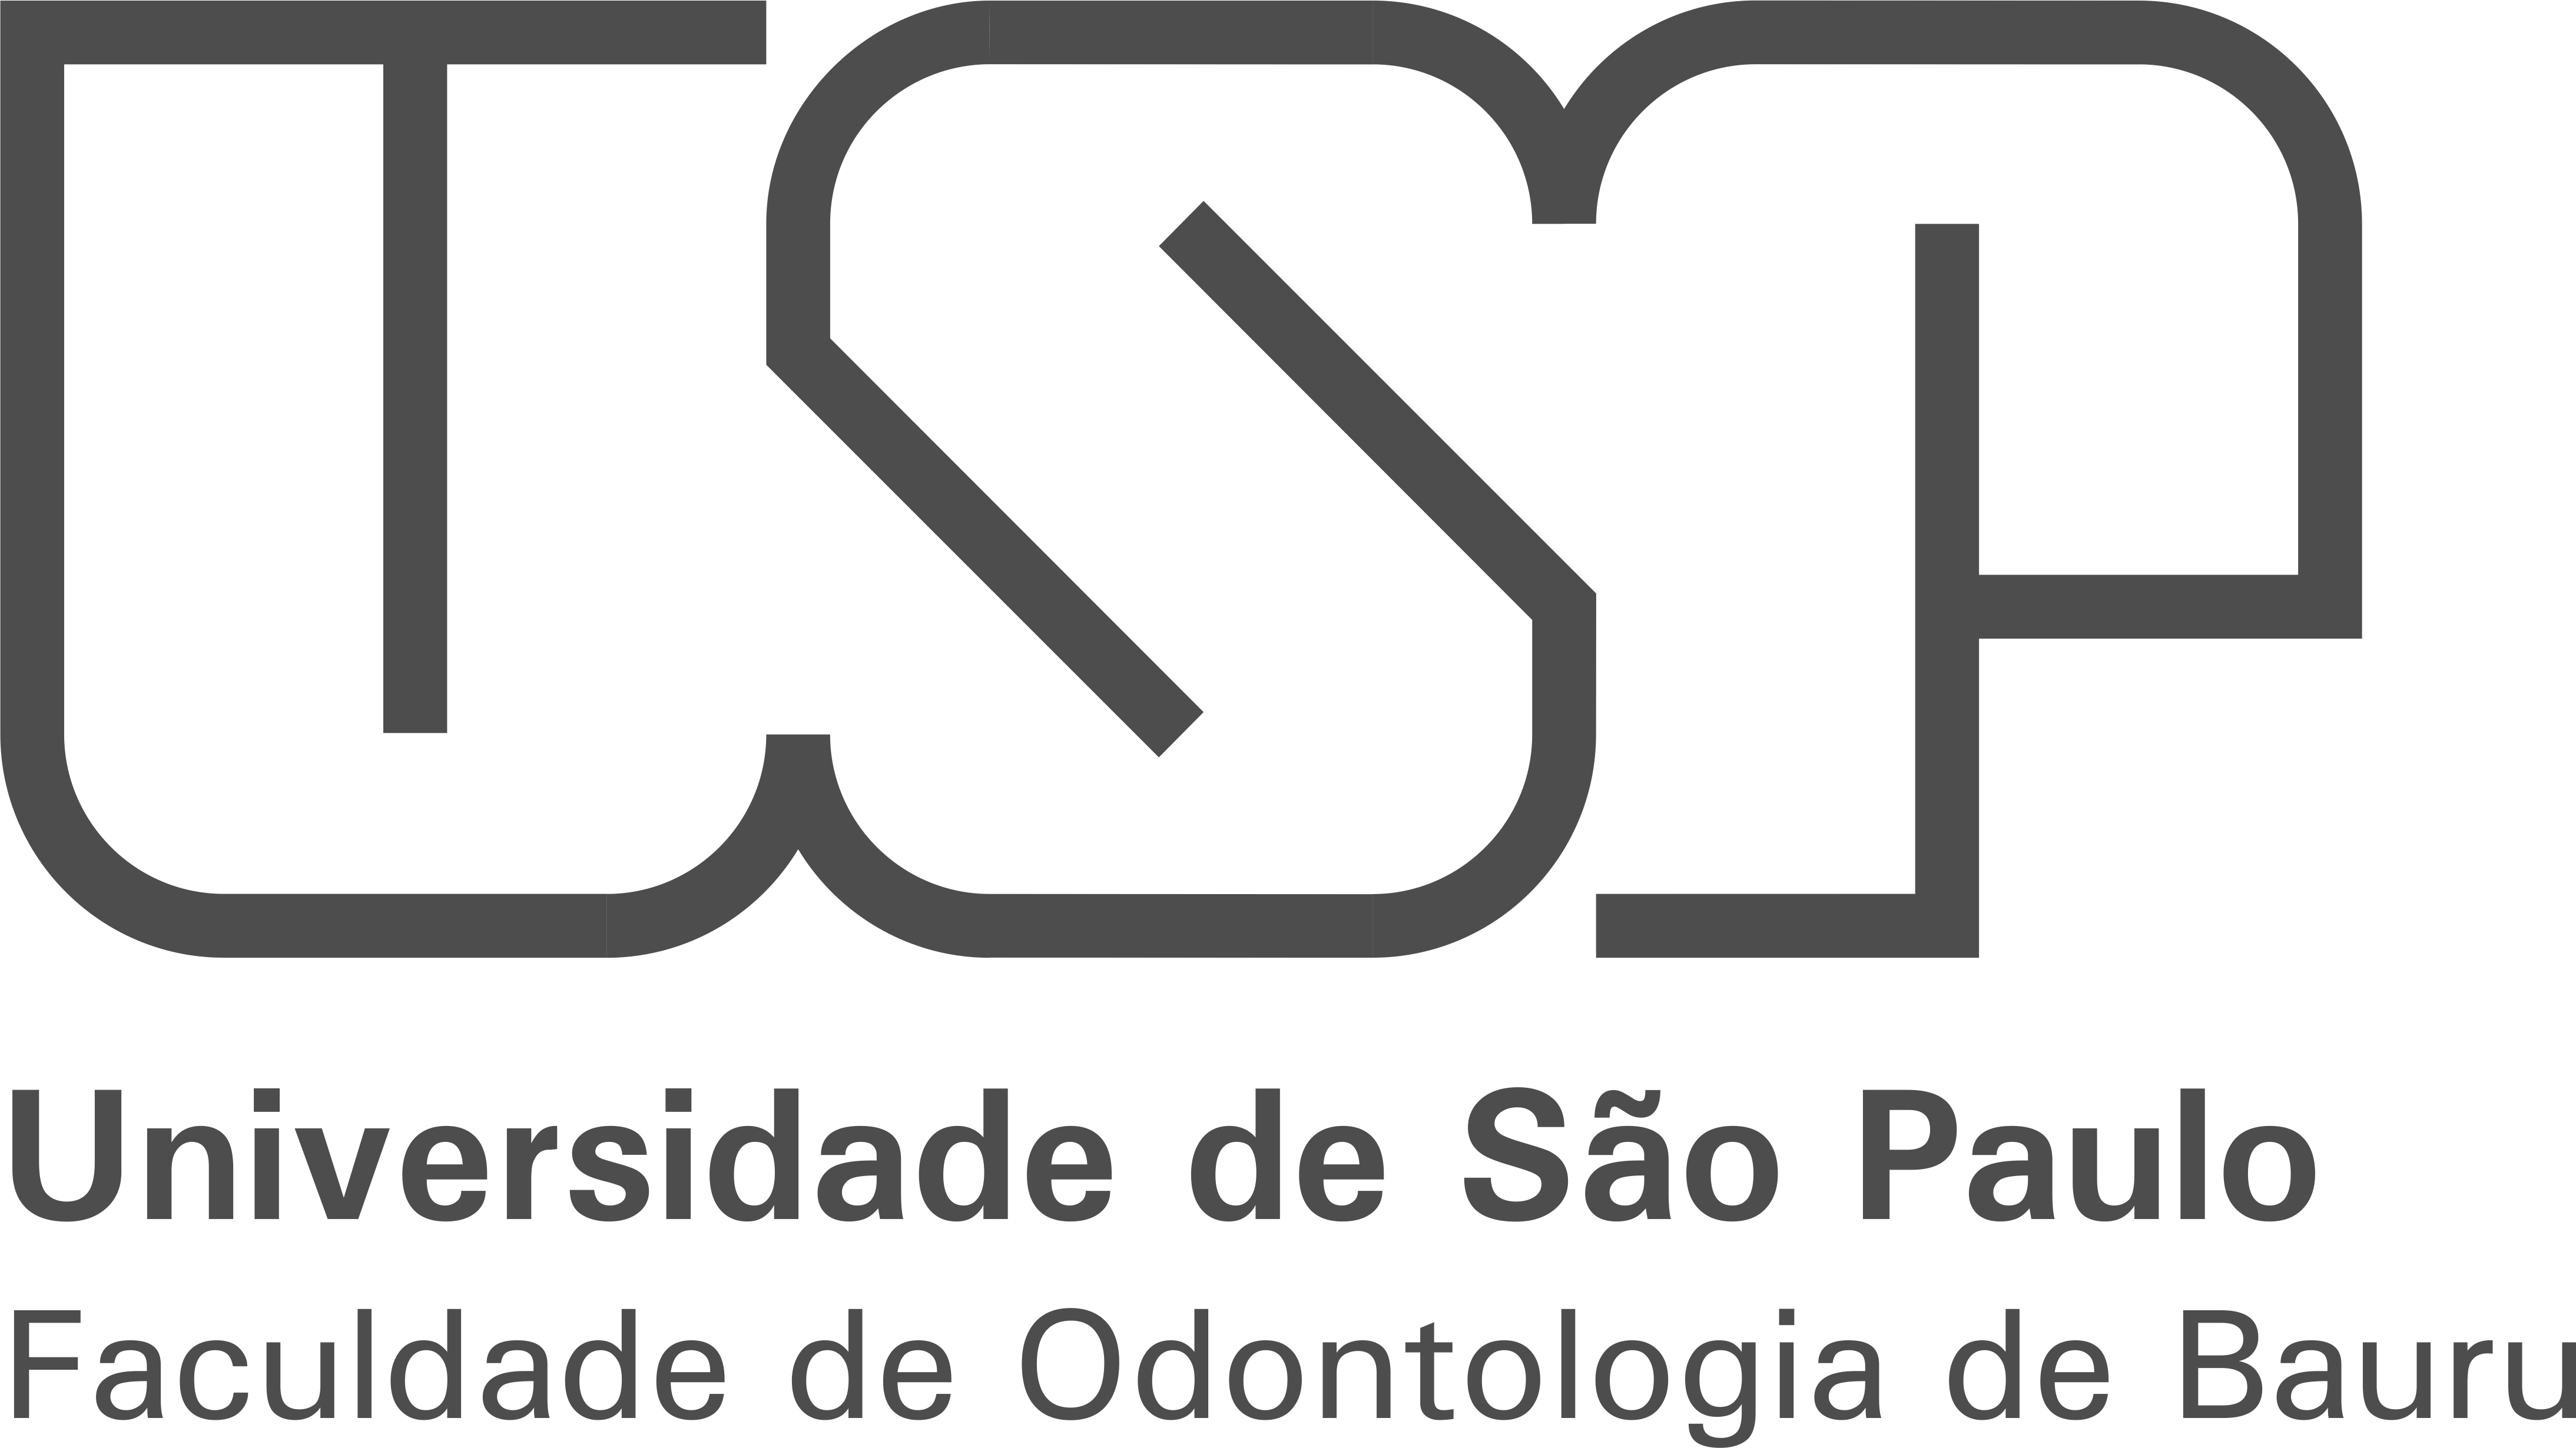 USP Logo - Identidade Visual - Universidade de São Paulo